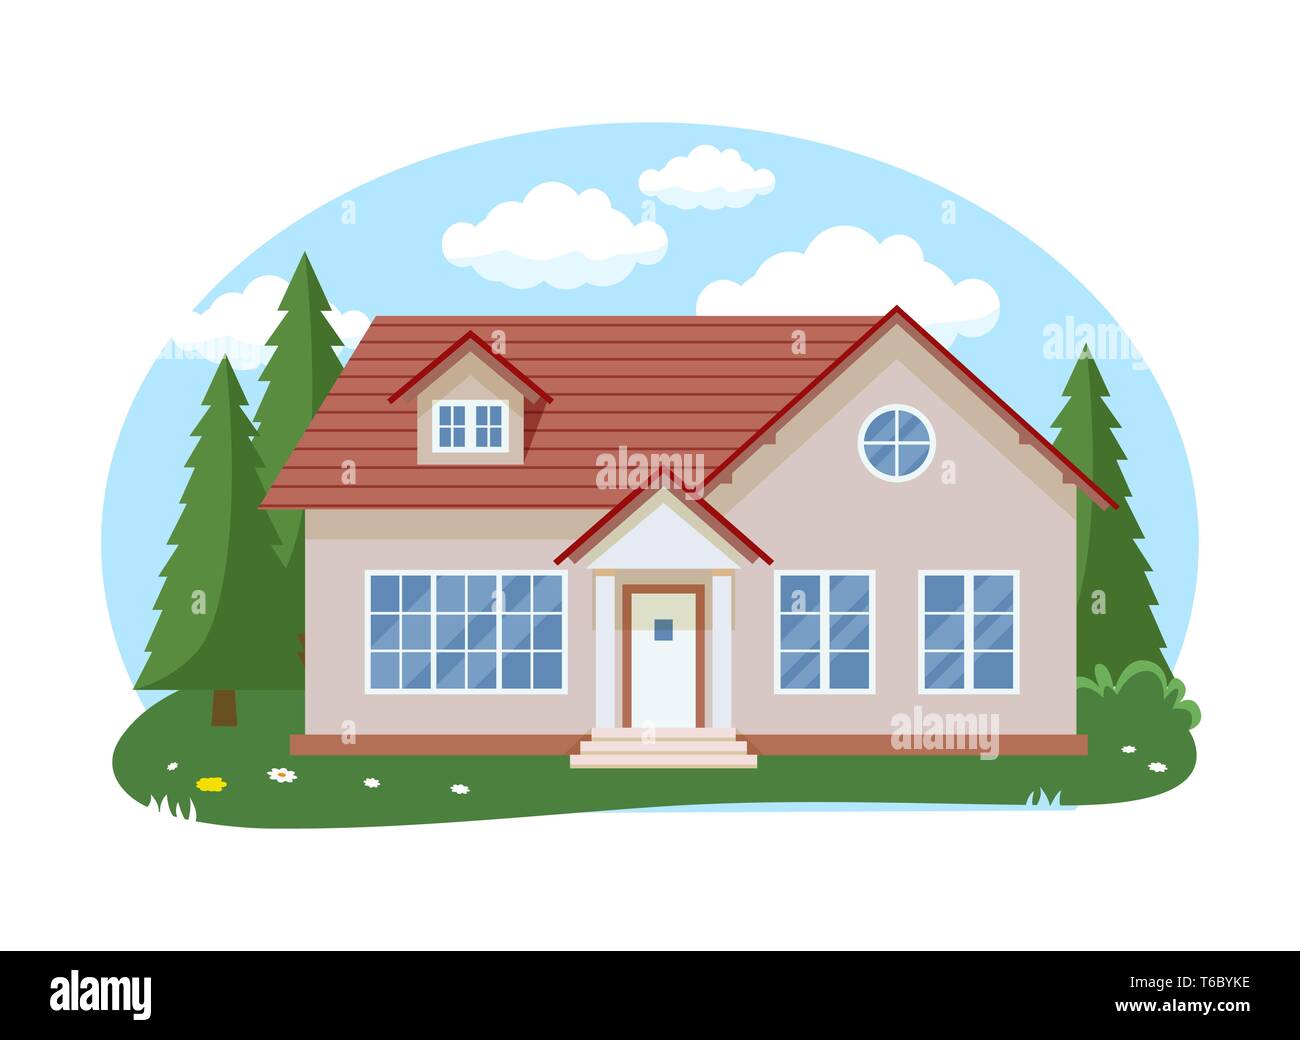 Cartoon Haus außen mit blauen bewölkten Himmel Front Home Architektur Konzept flache Design Stil. Vector Illustration der Fassade Gebäude Stock Vektor